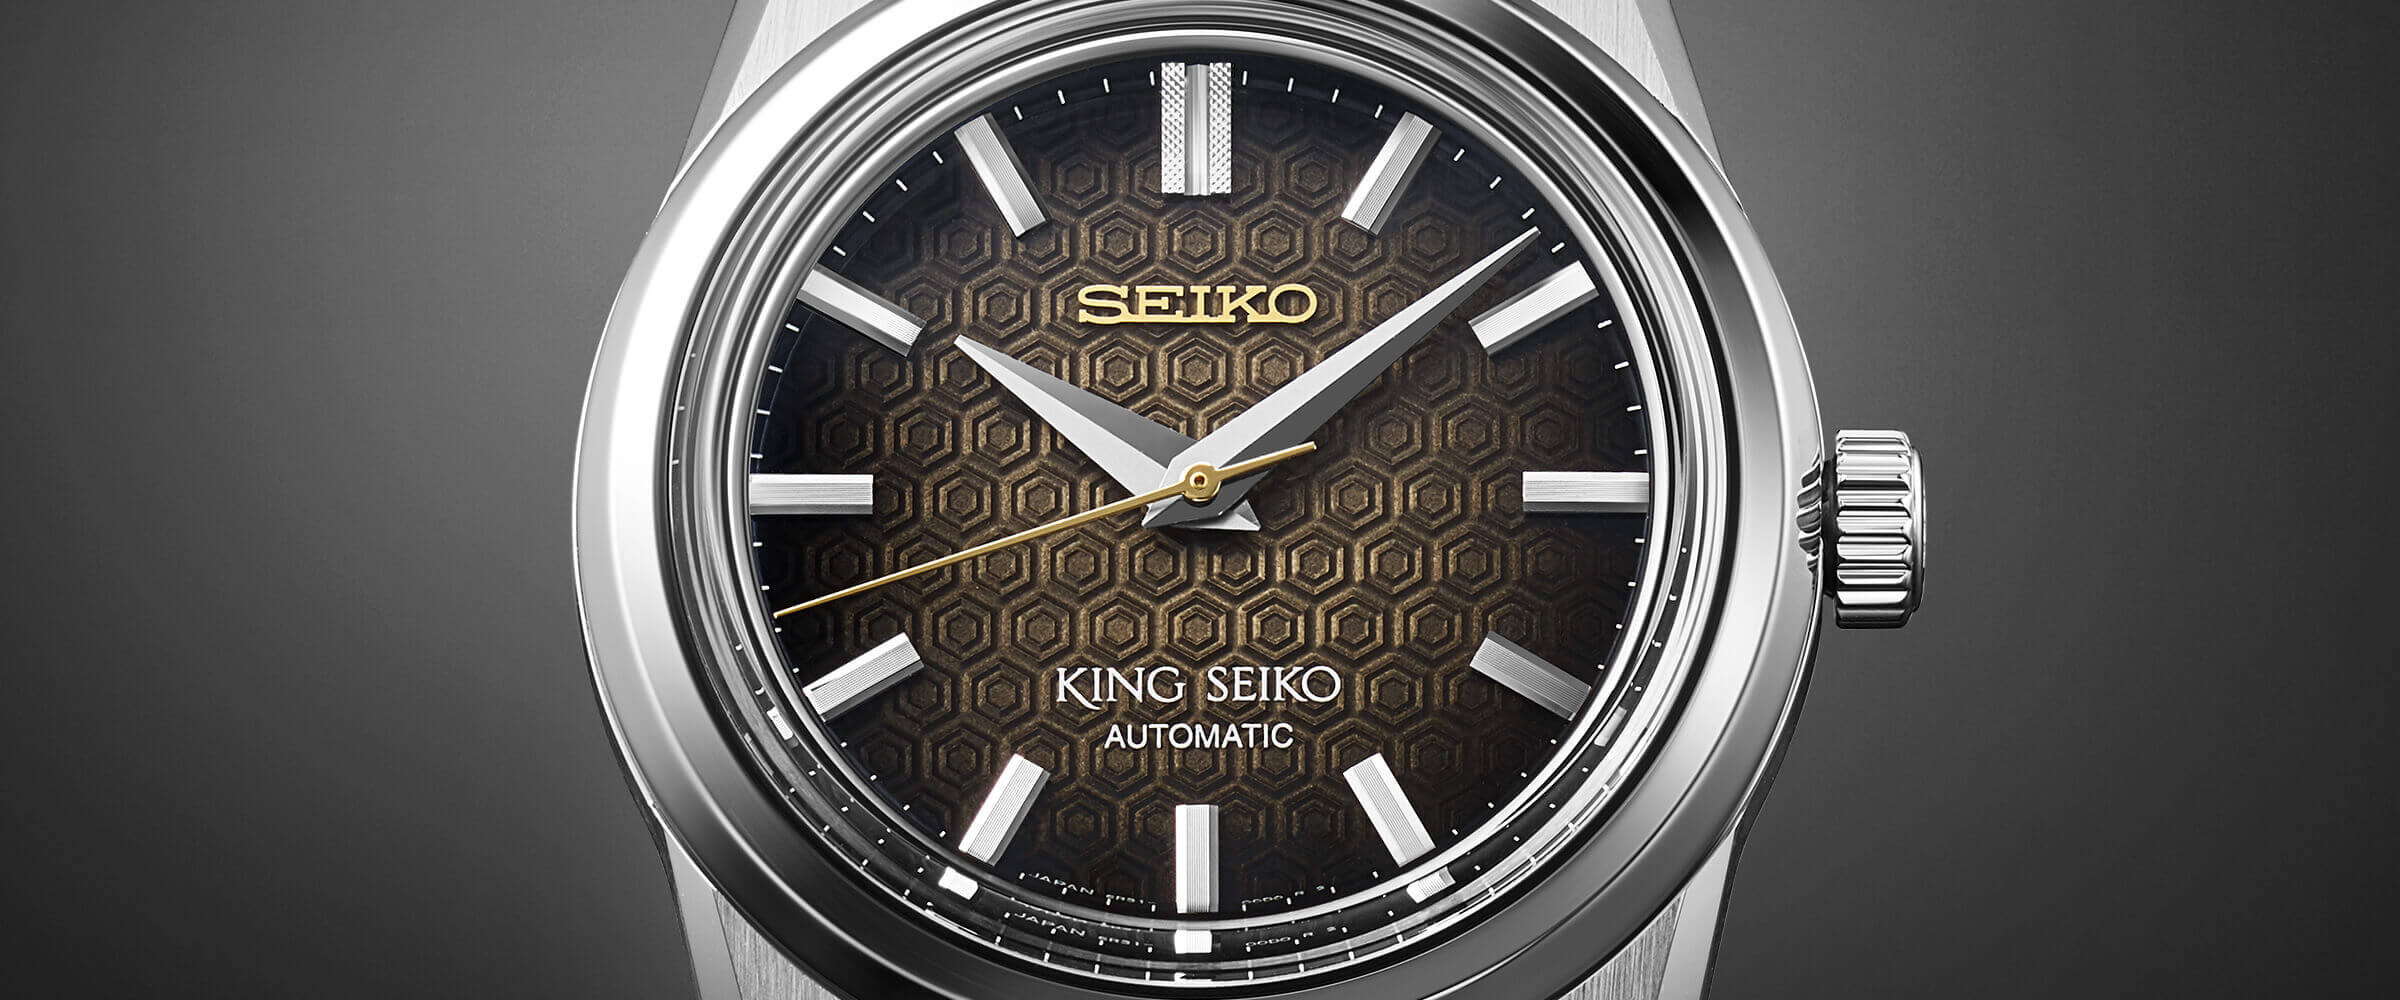 セイコー腕時計110周年記念限定モデル キングセイコー | セイコーウオッチ